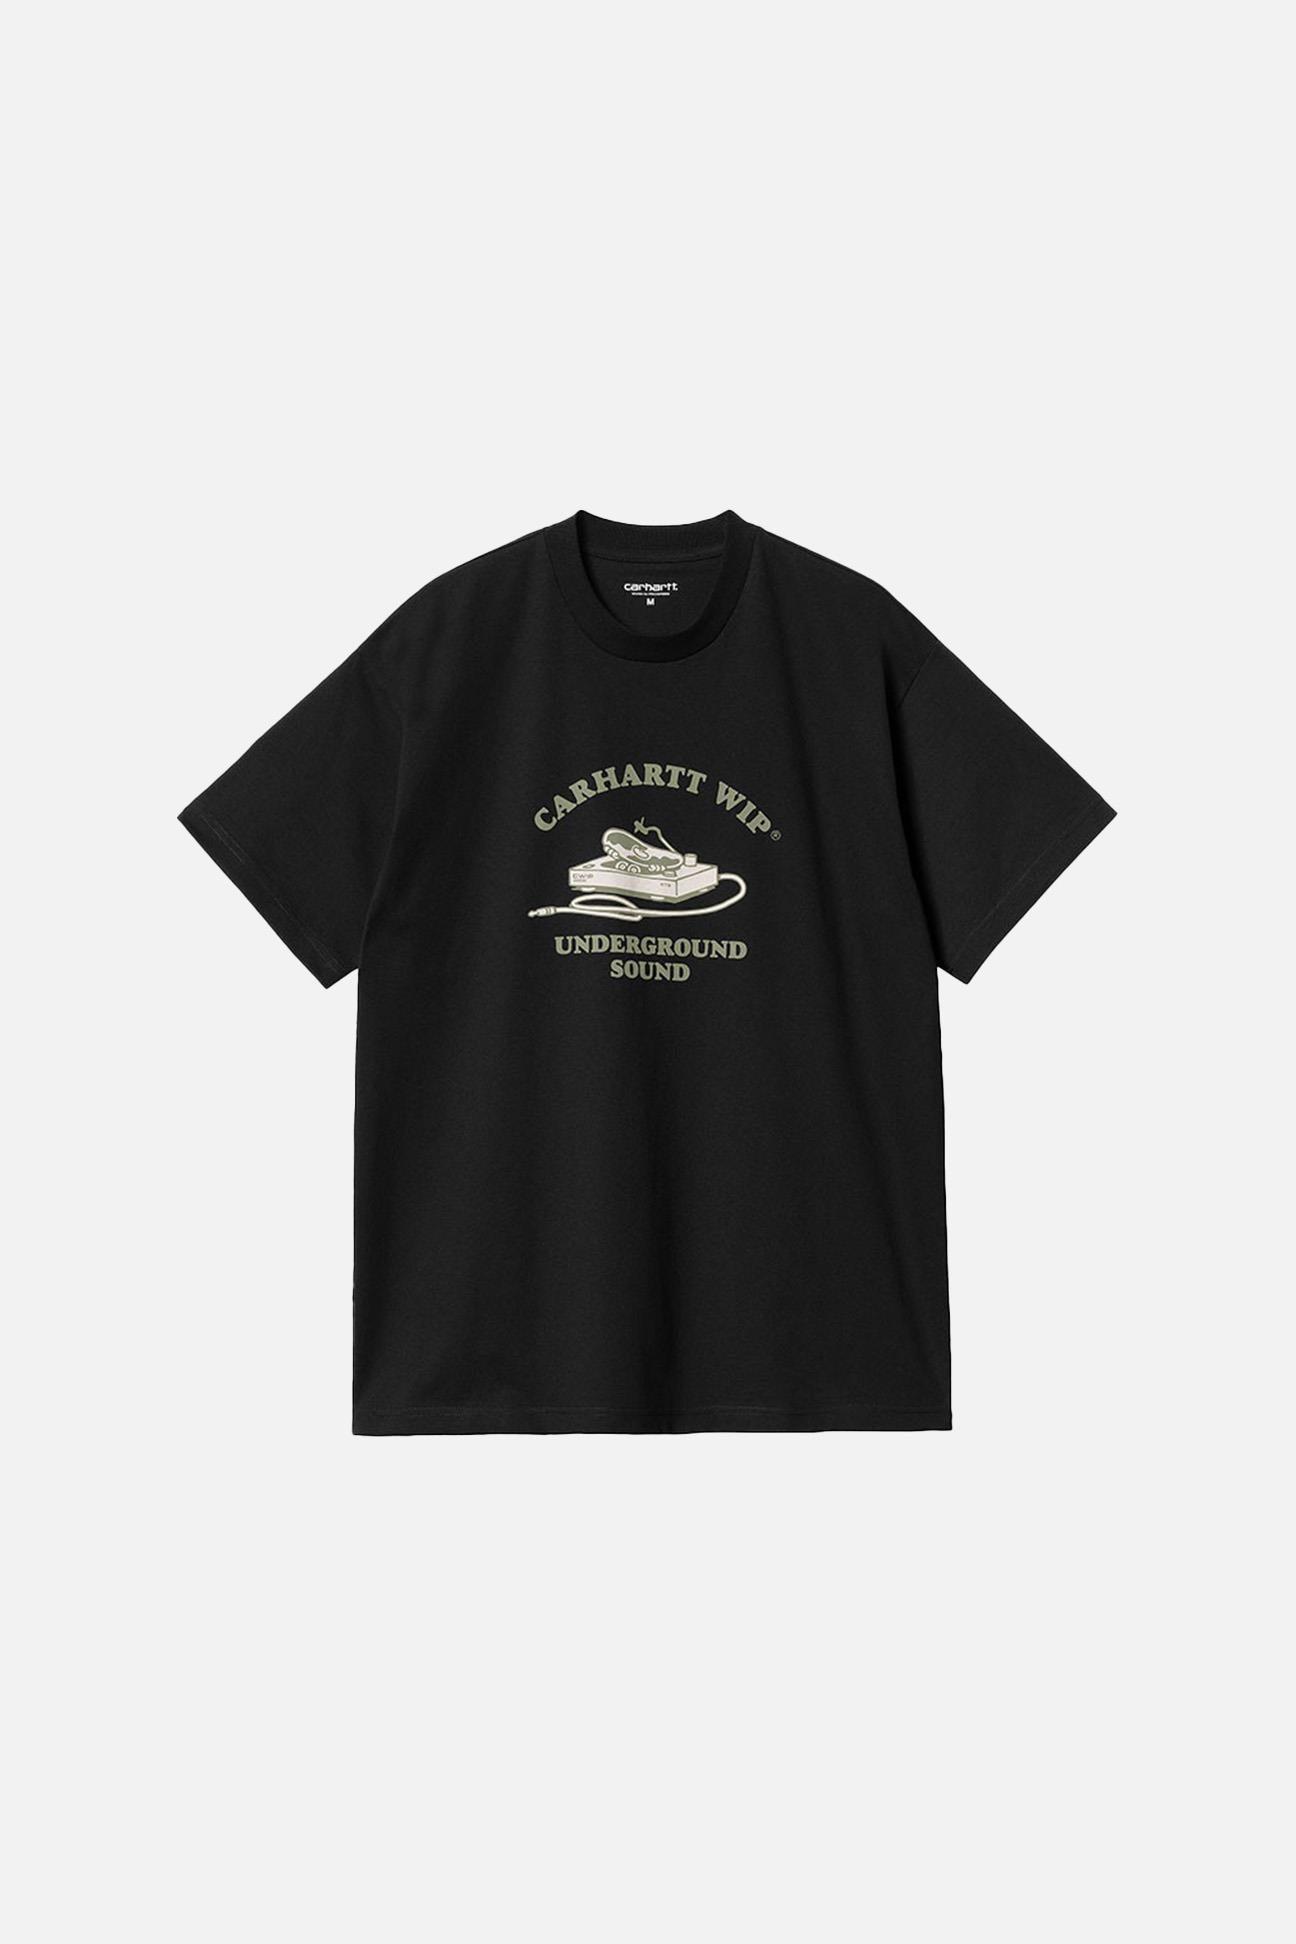 S/S Underground Sound T-Shirt 